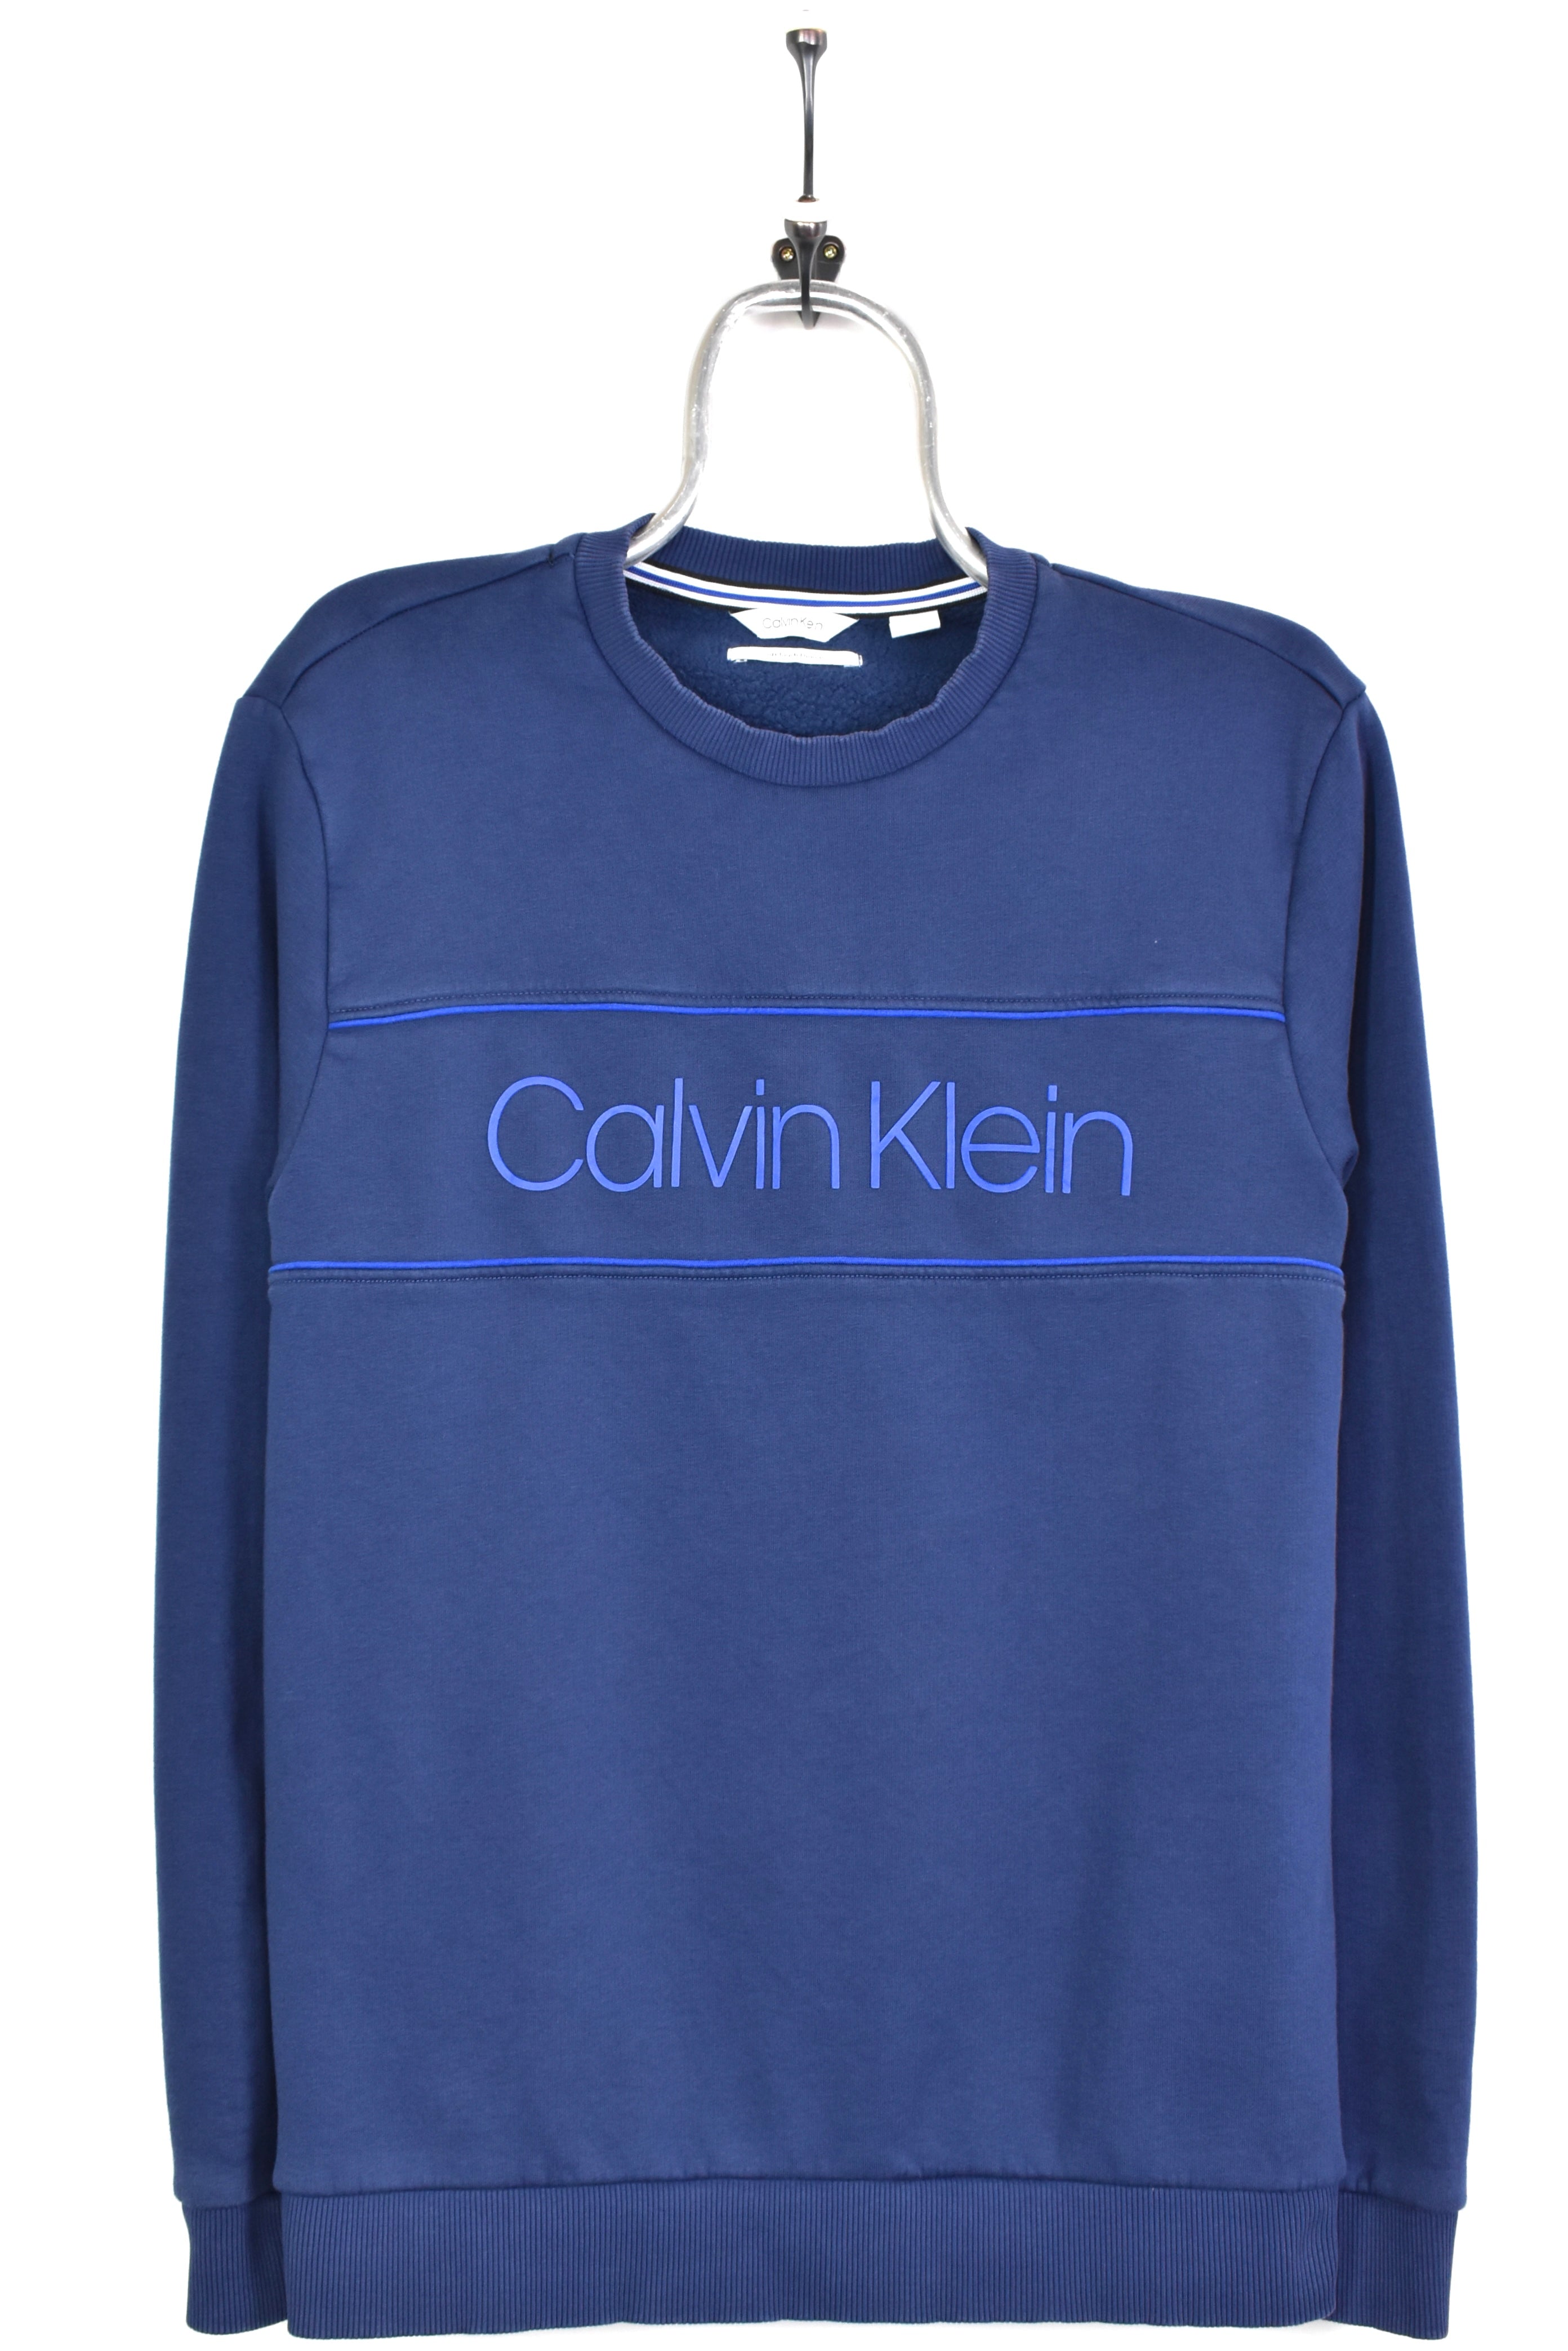 Modern Calvin Klein blue sweatshirt | Medium CALVIN KLEIN